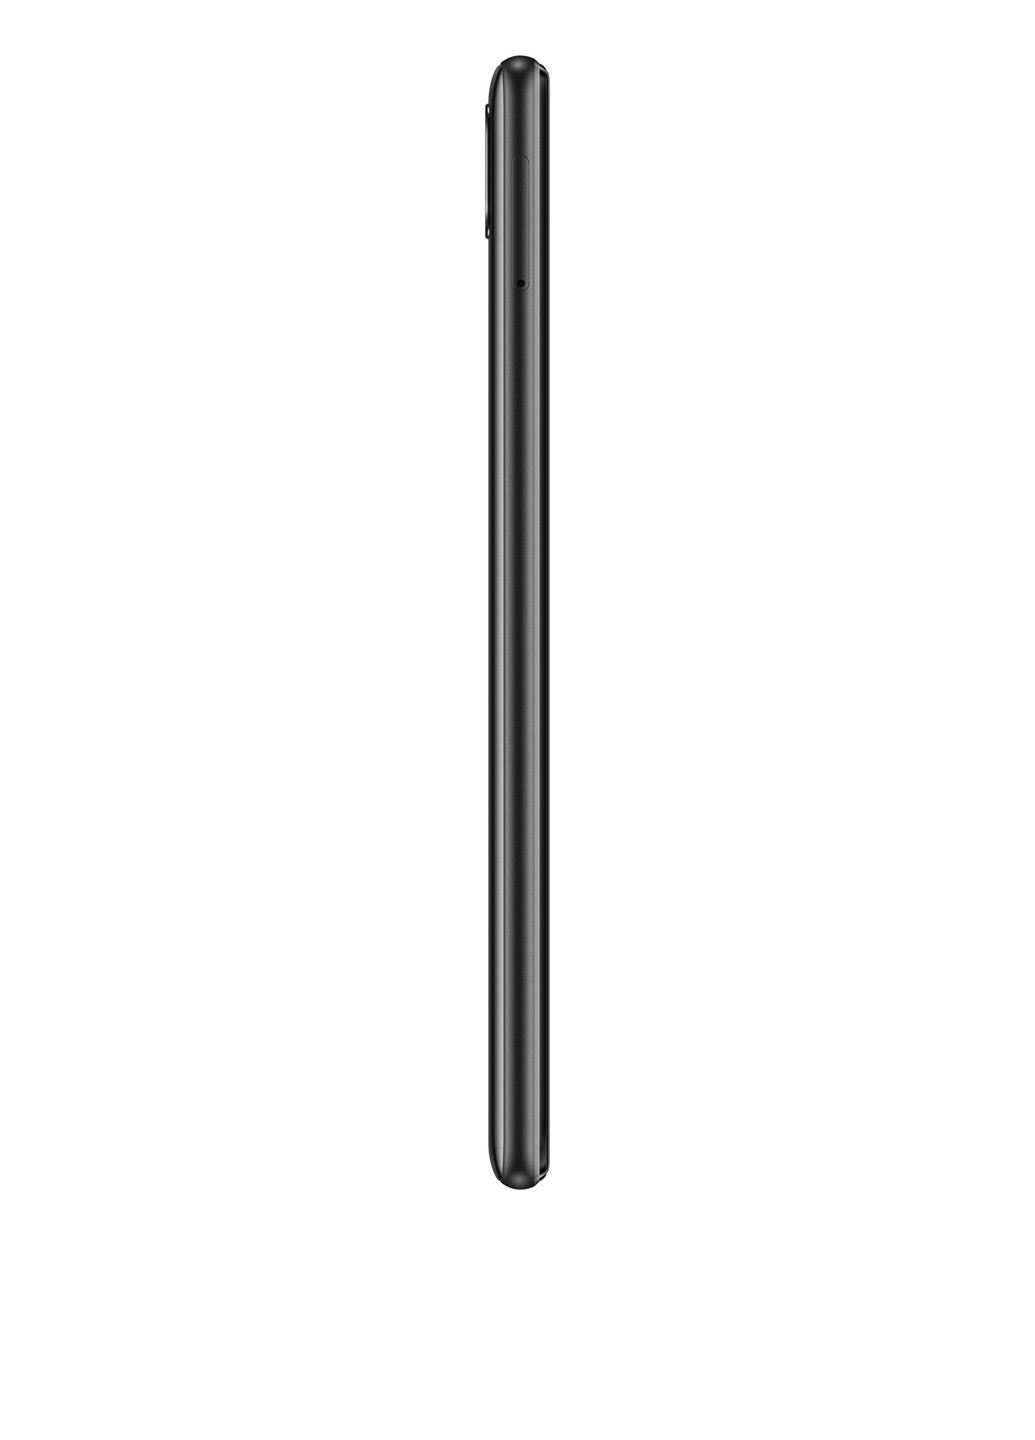 Смартфон Huawei y7 2019 3/32gb midnight black (dub-lх1) (130284885)